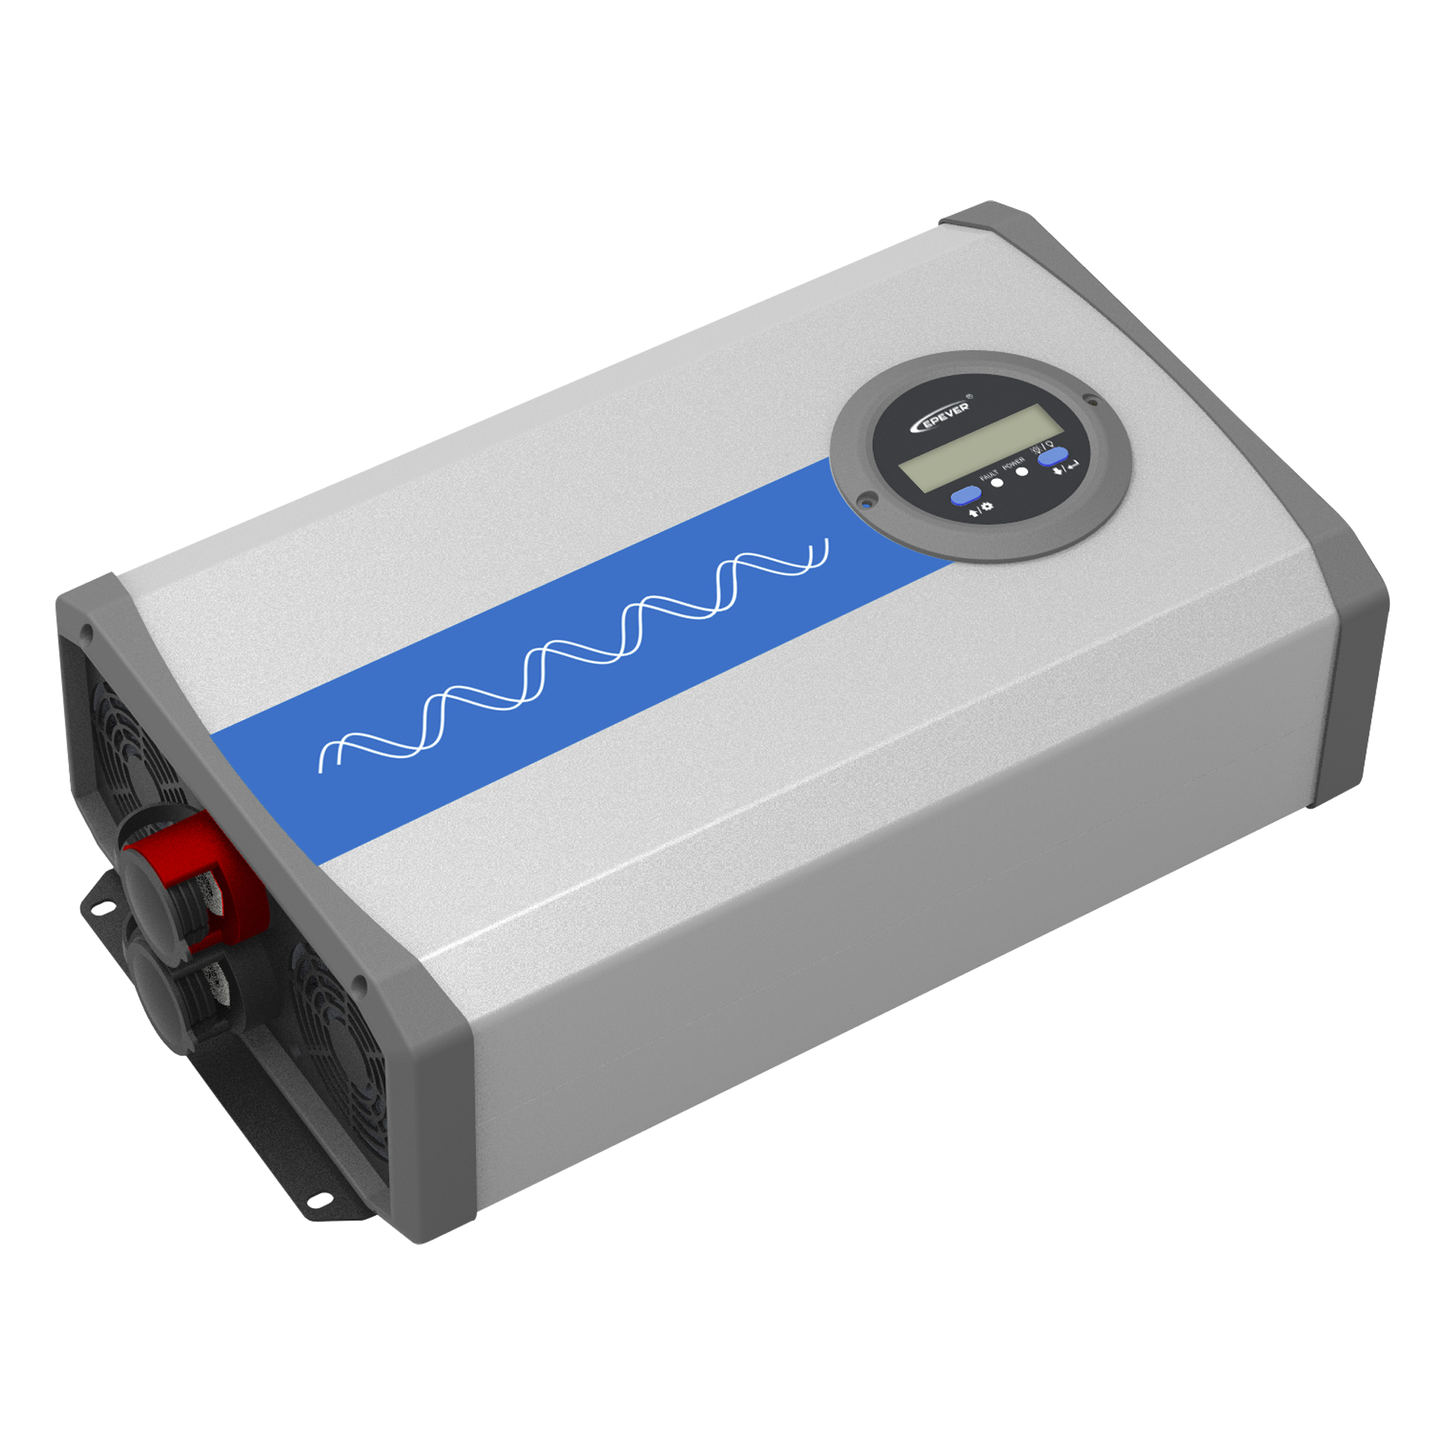 Inversor IPower-Plus 2000 W, Ent: 24 V, Salida: 120 Vca Ideal para Baterías de Litio